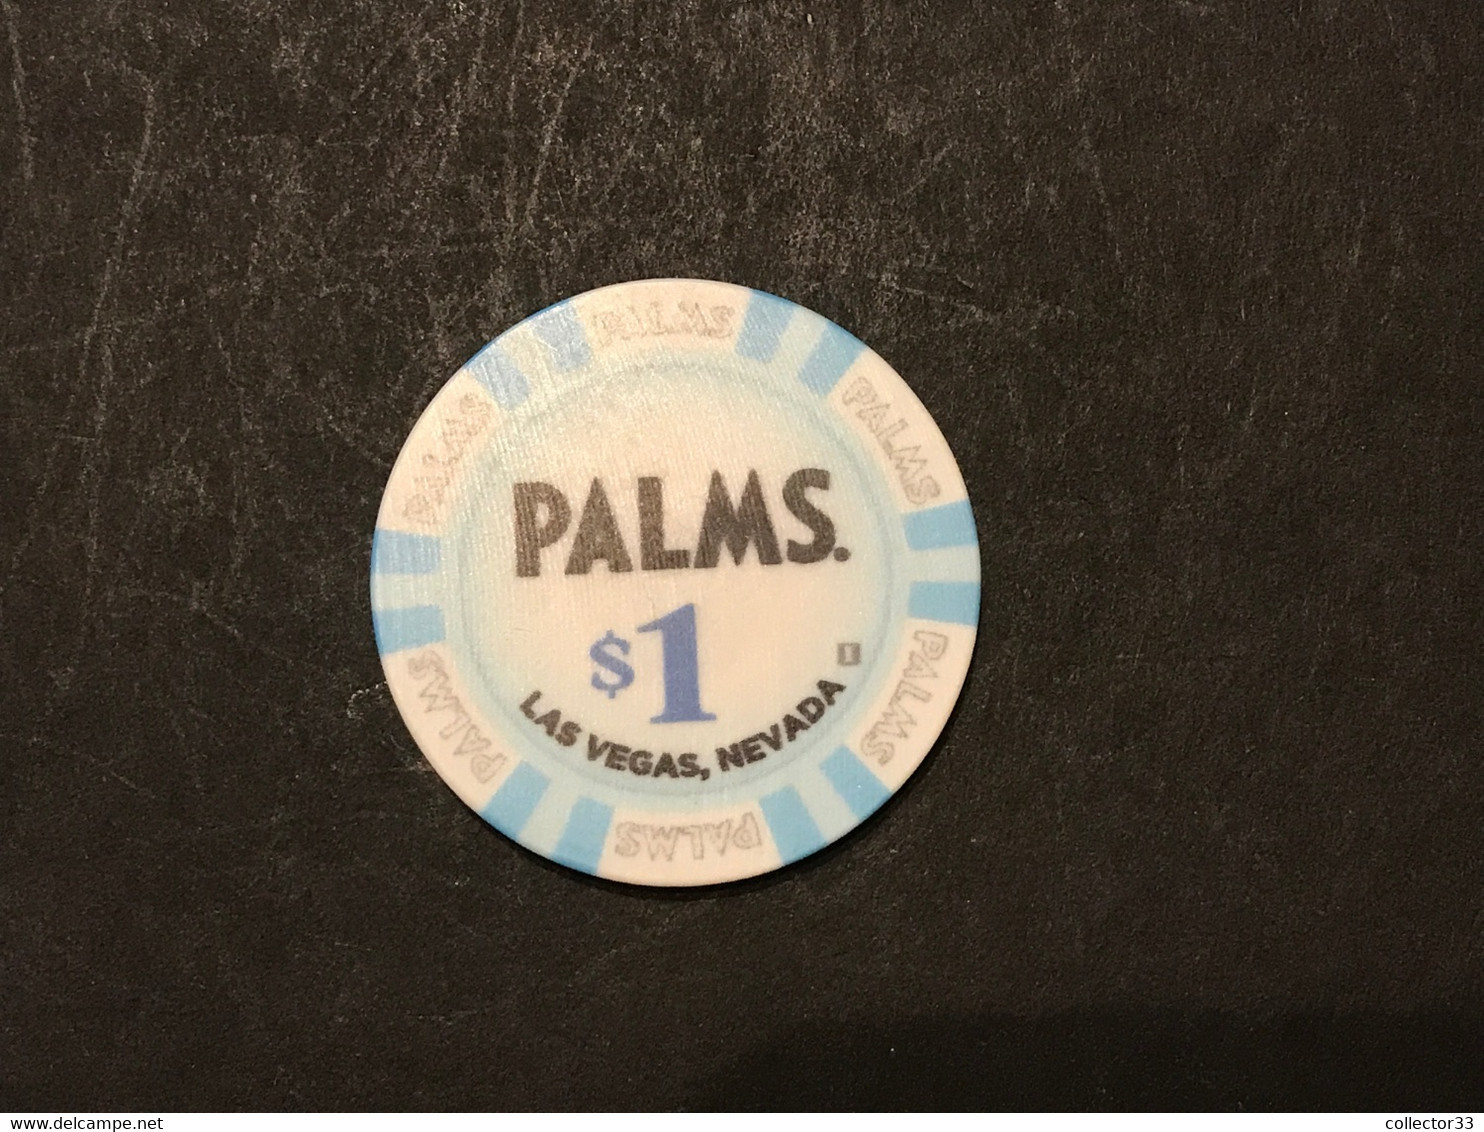 JETON / TOKEN LAS VEGAS 1$  CASINO PALMS - Casino